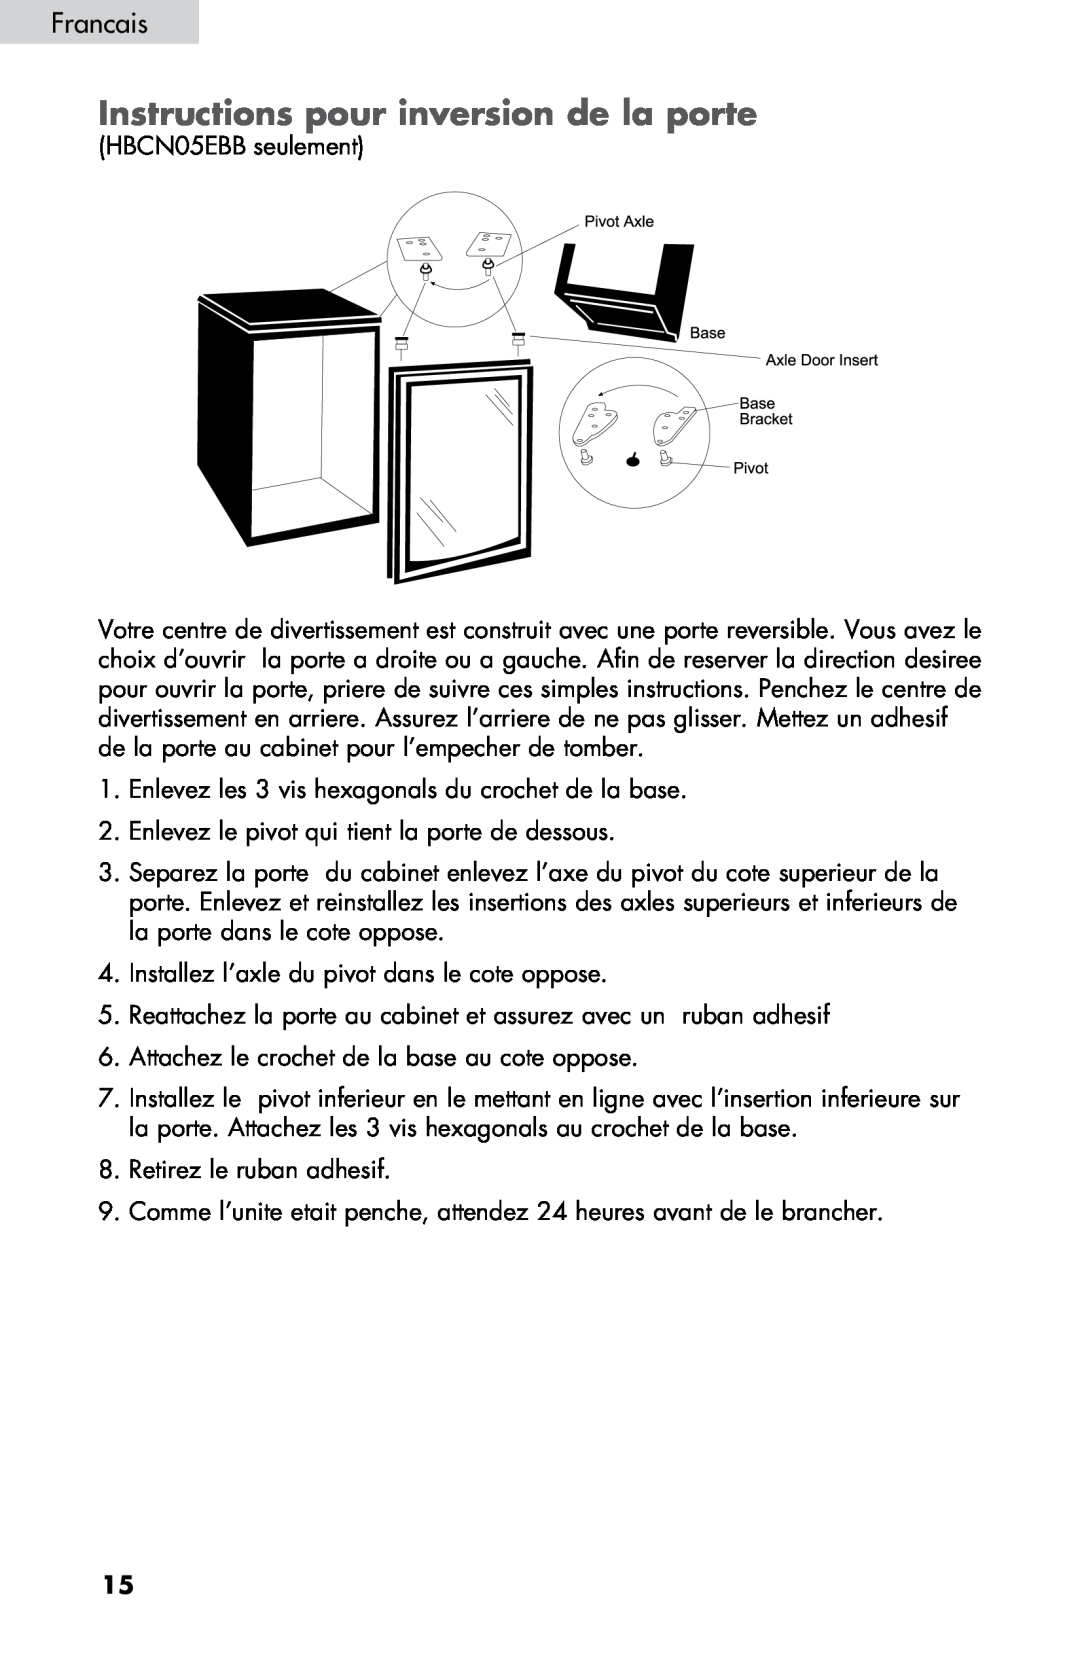 Haier ZHBCN05FVS user manual Instructions pour inversion de la porte, Francais 